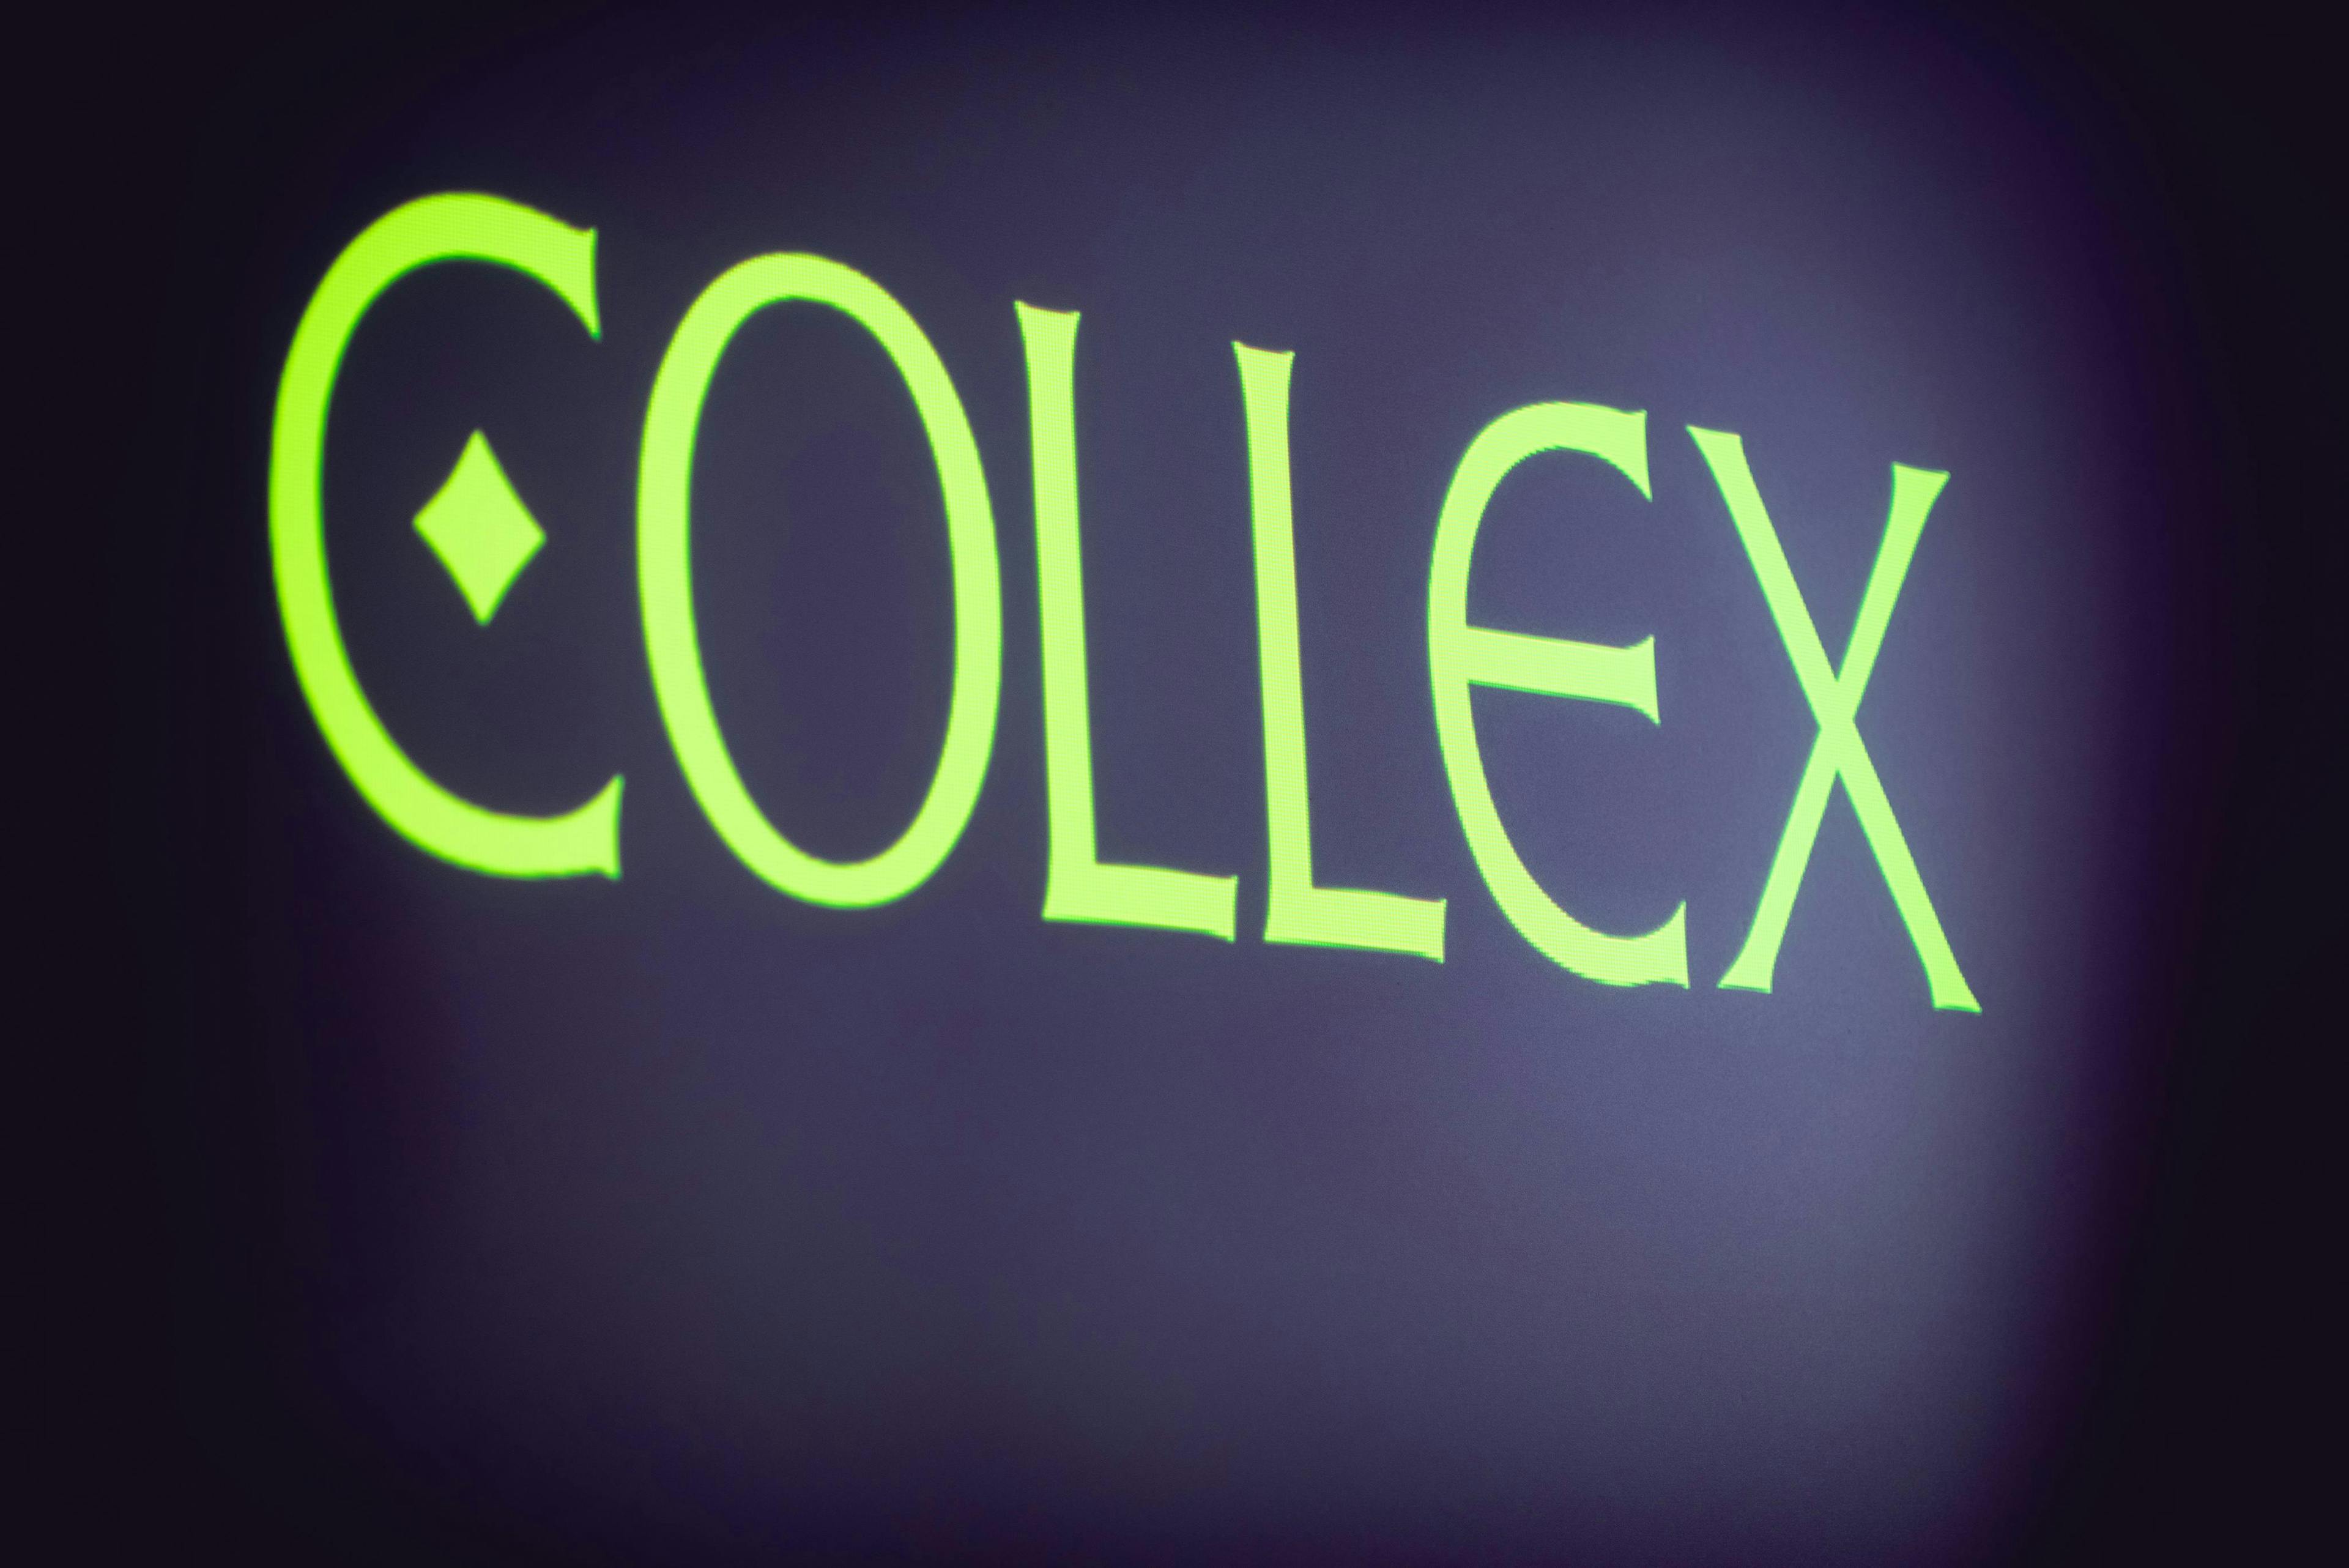 collex neon light text